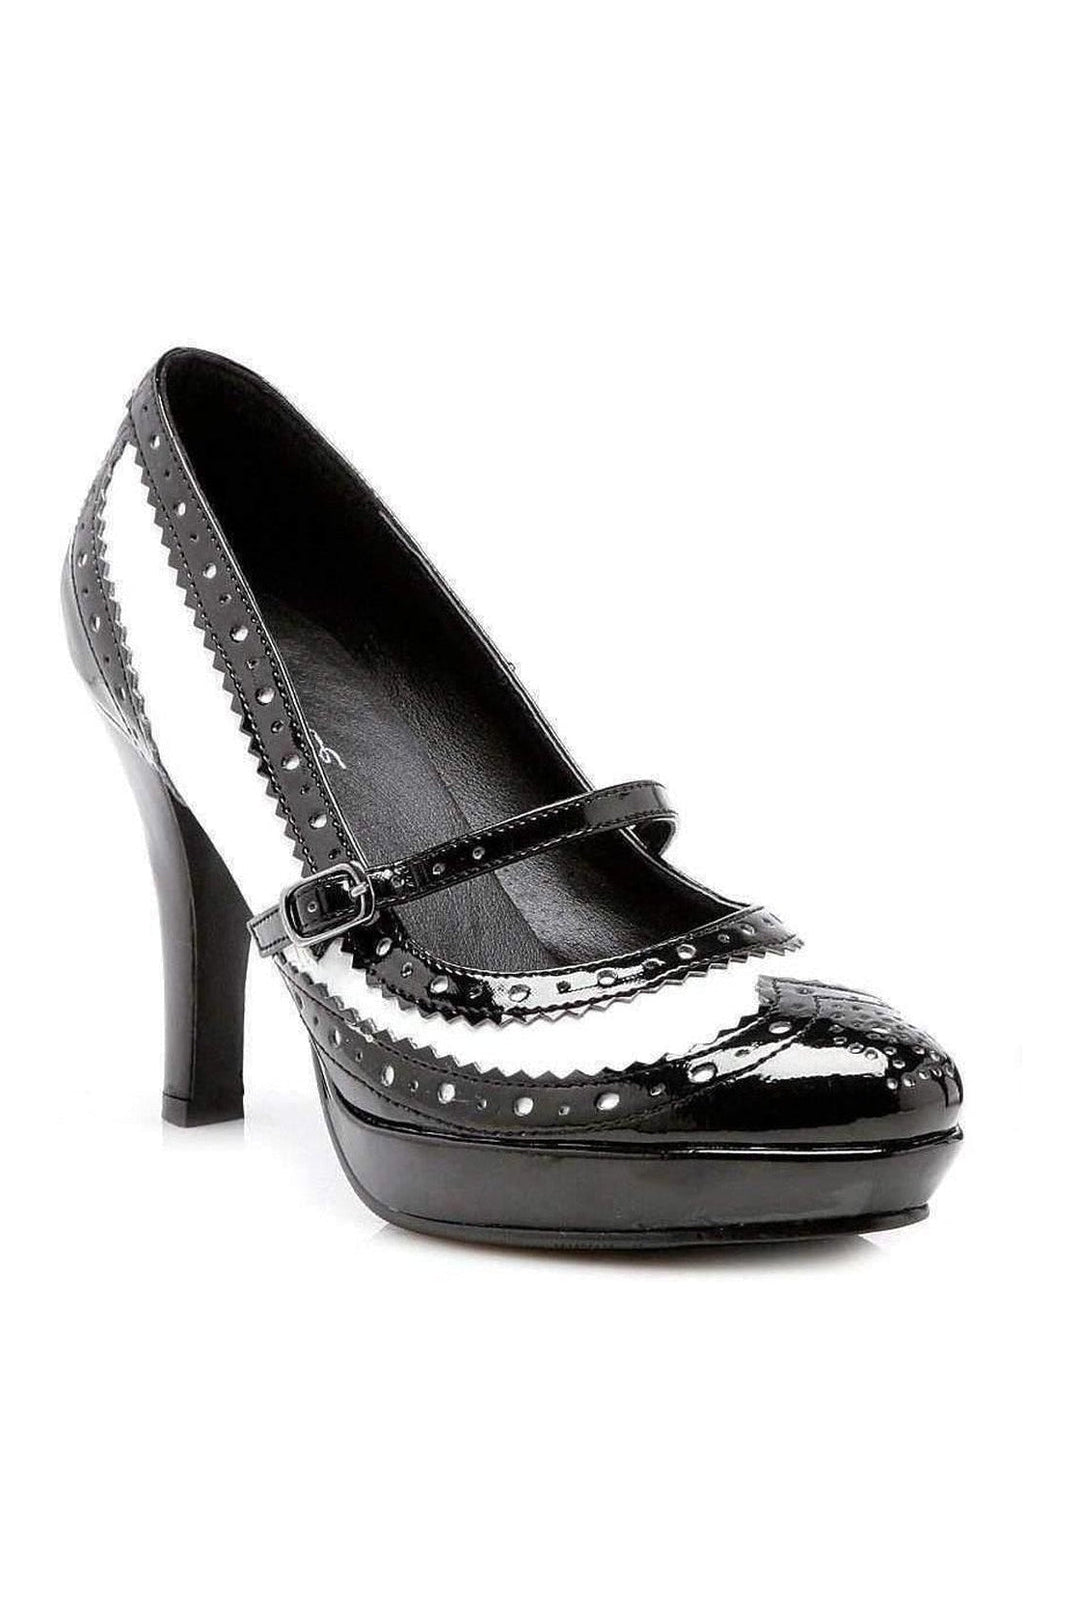 414-FLAPPER Pump | Black Multi Patent-Ellie Shoes-Multi-Pumps-SEXYSHOES.COM